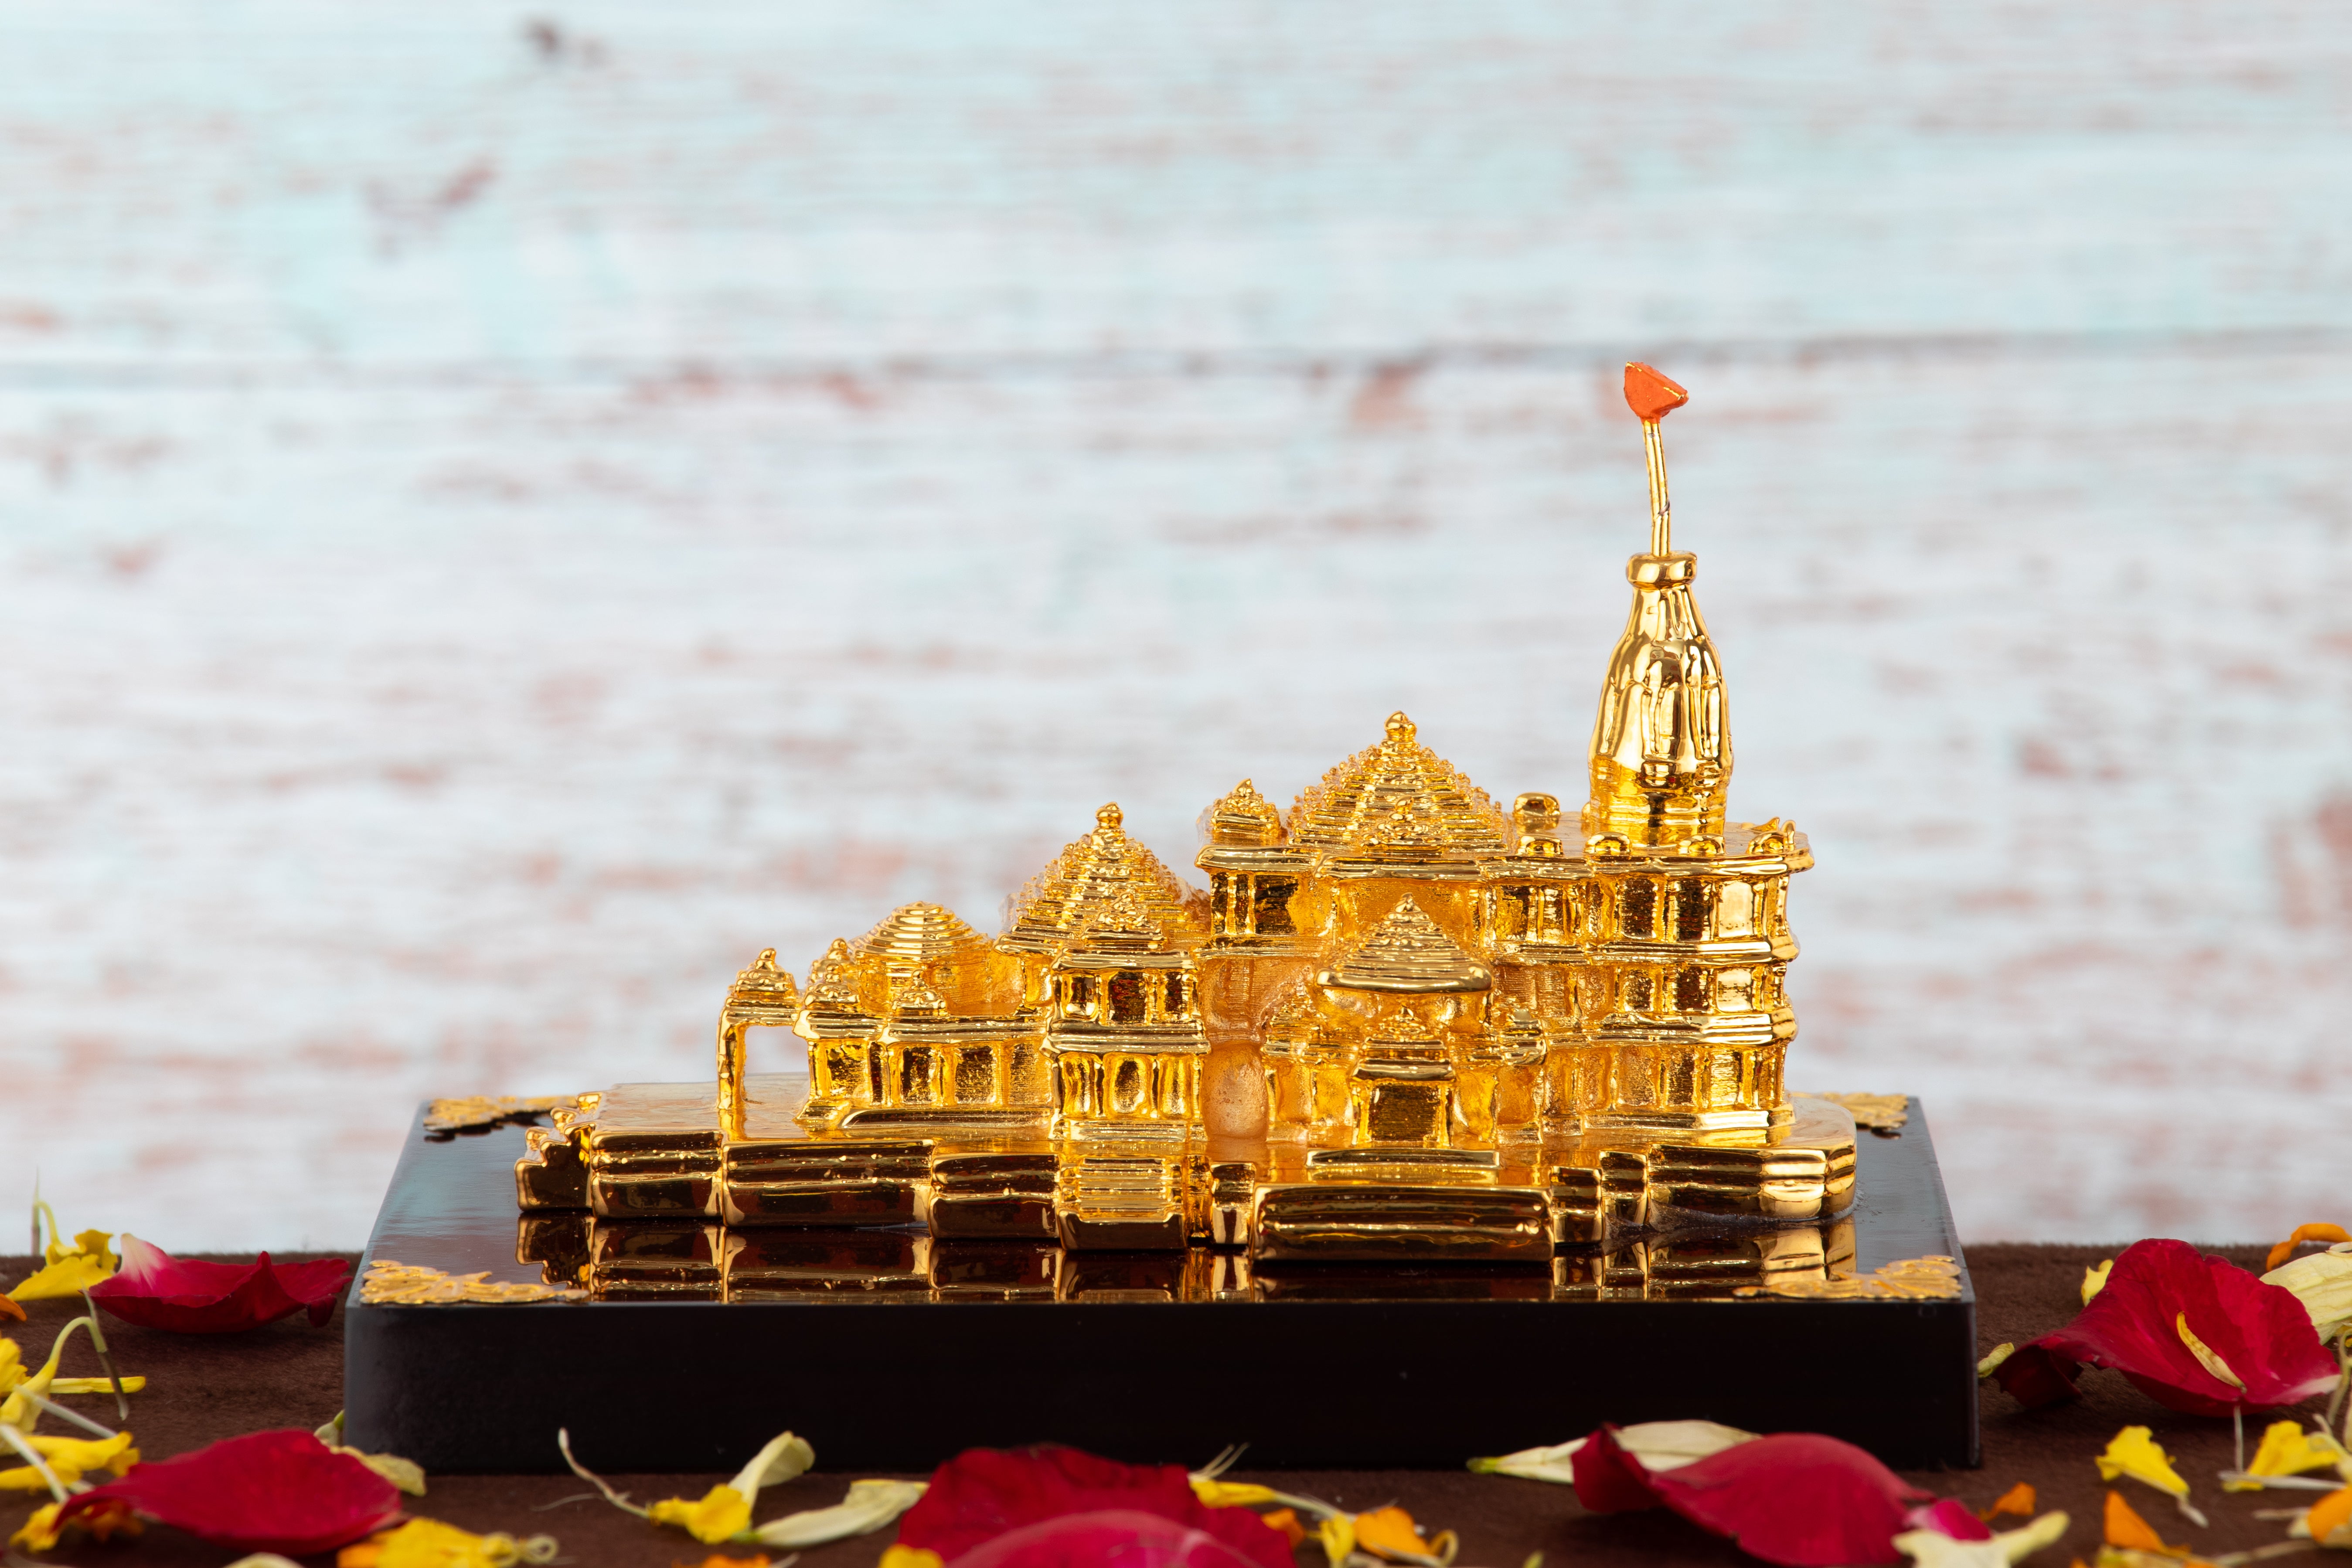 Premium Ram Mandir for Home DÃ©cor/Pooja Room/Gifting With a Free Jai Shree Ram Bookmark-Gold